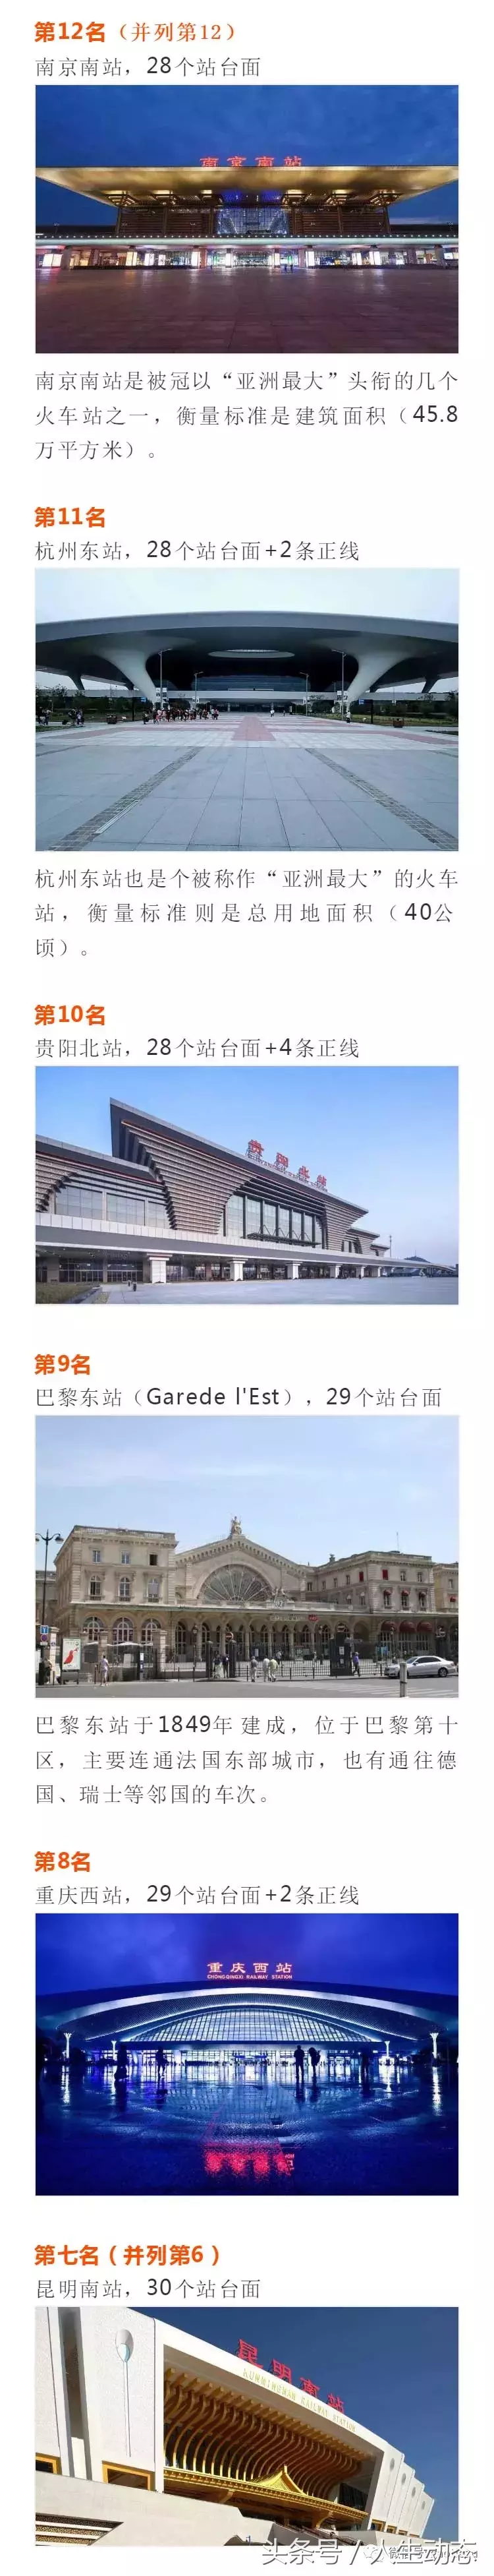 世界最大的15个火车站，中国竟然占了9个！占比达60%